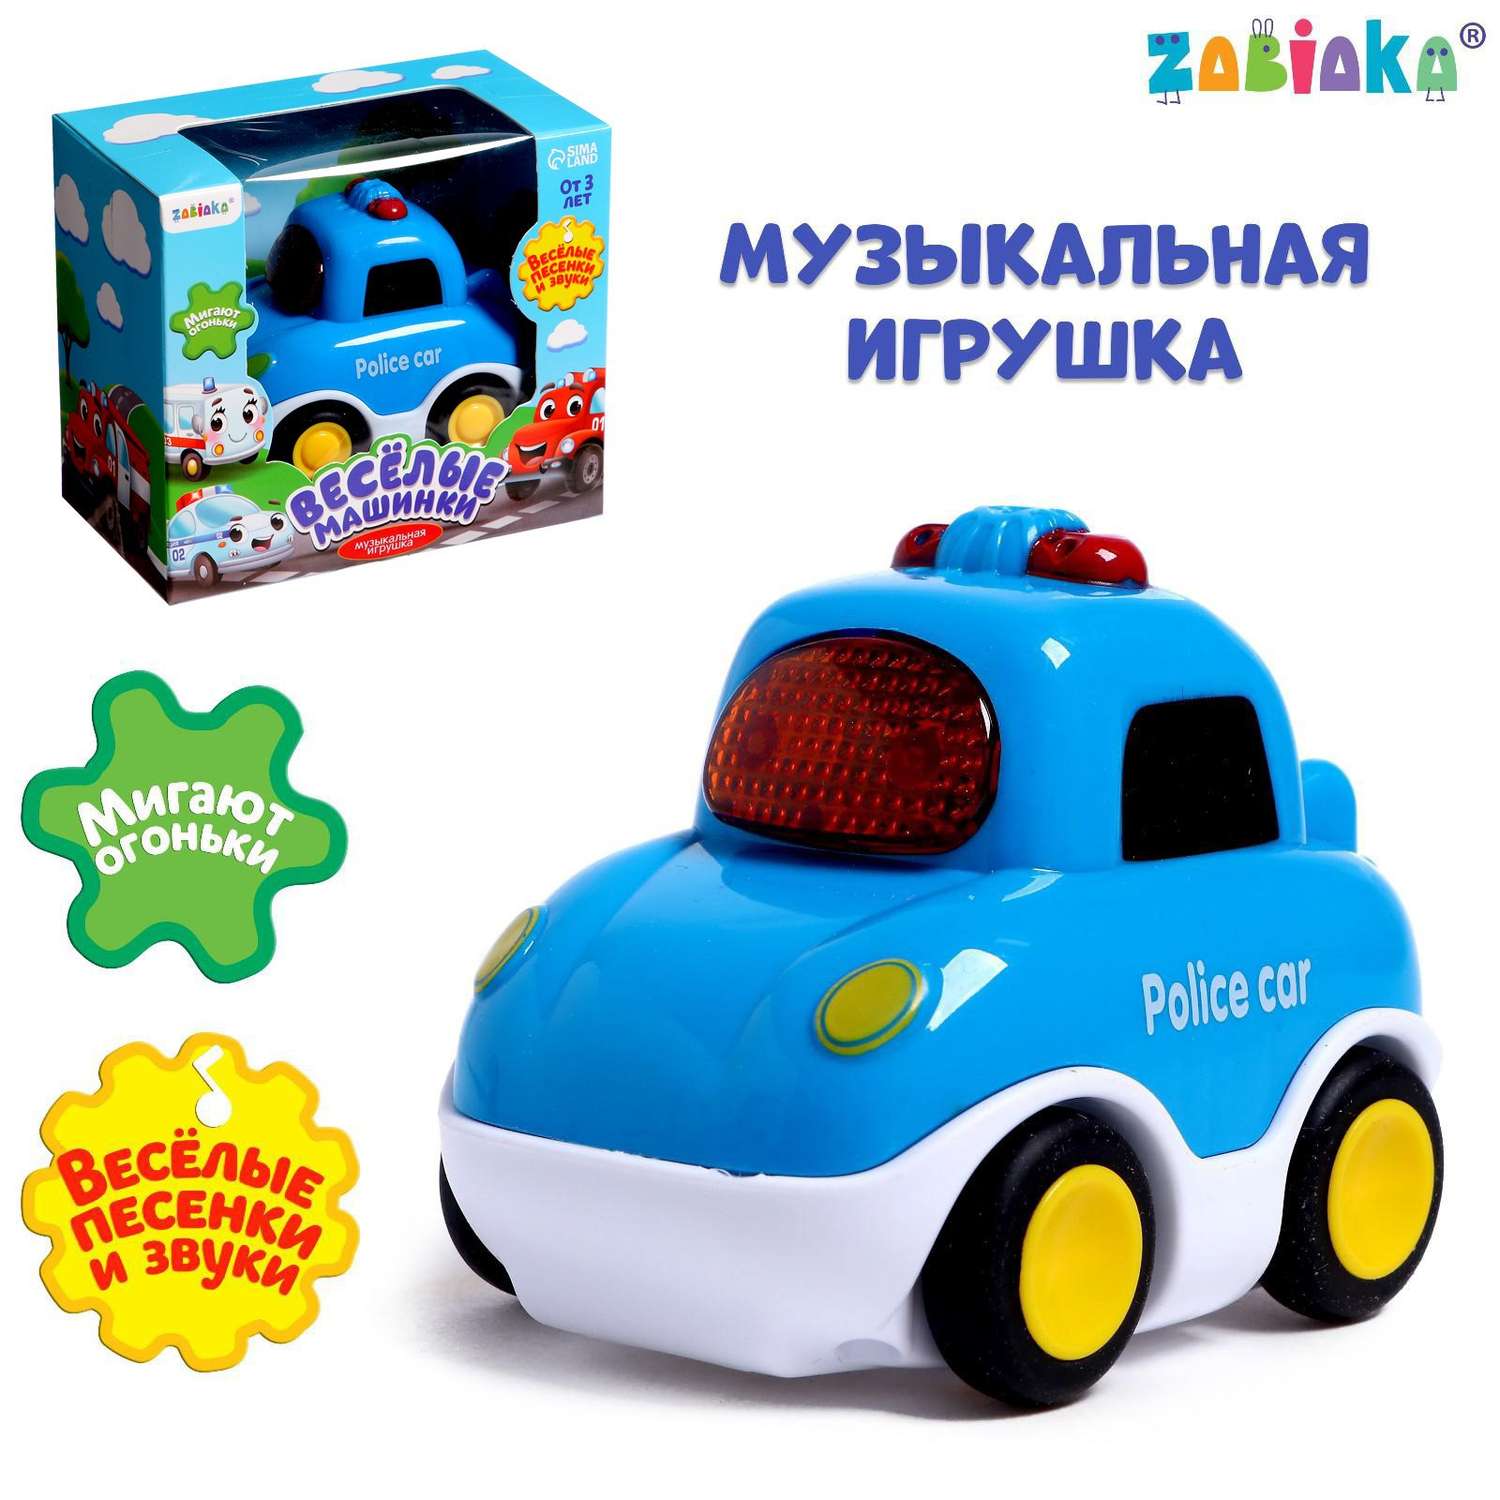 Музыкальная игрушка Zabiaka Полицейская машина цвет синий - фото 1